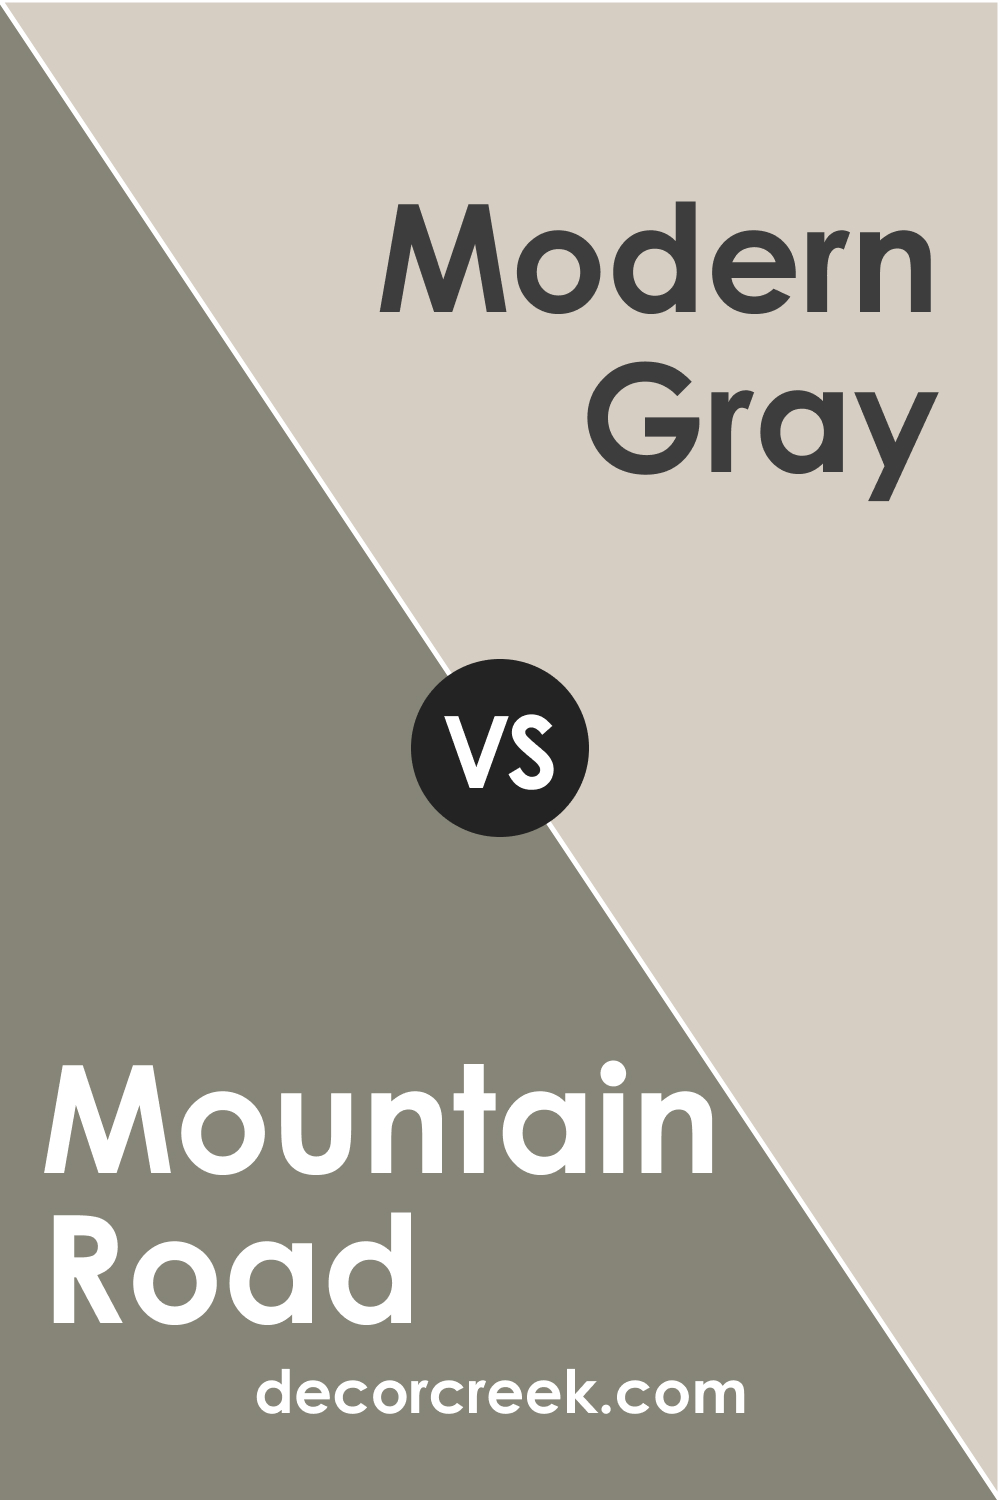 SW 7743 Mountain Road vs. SW Modern Gray